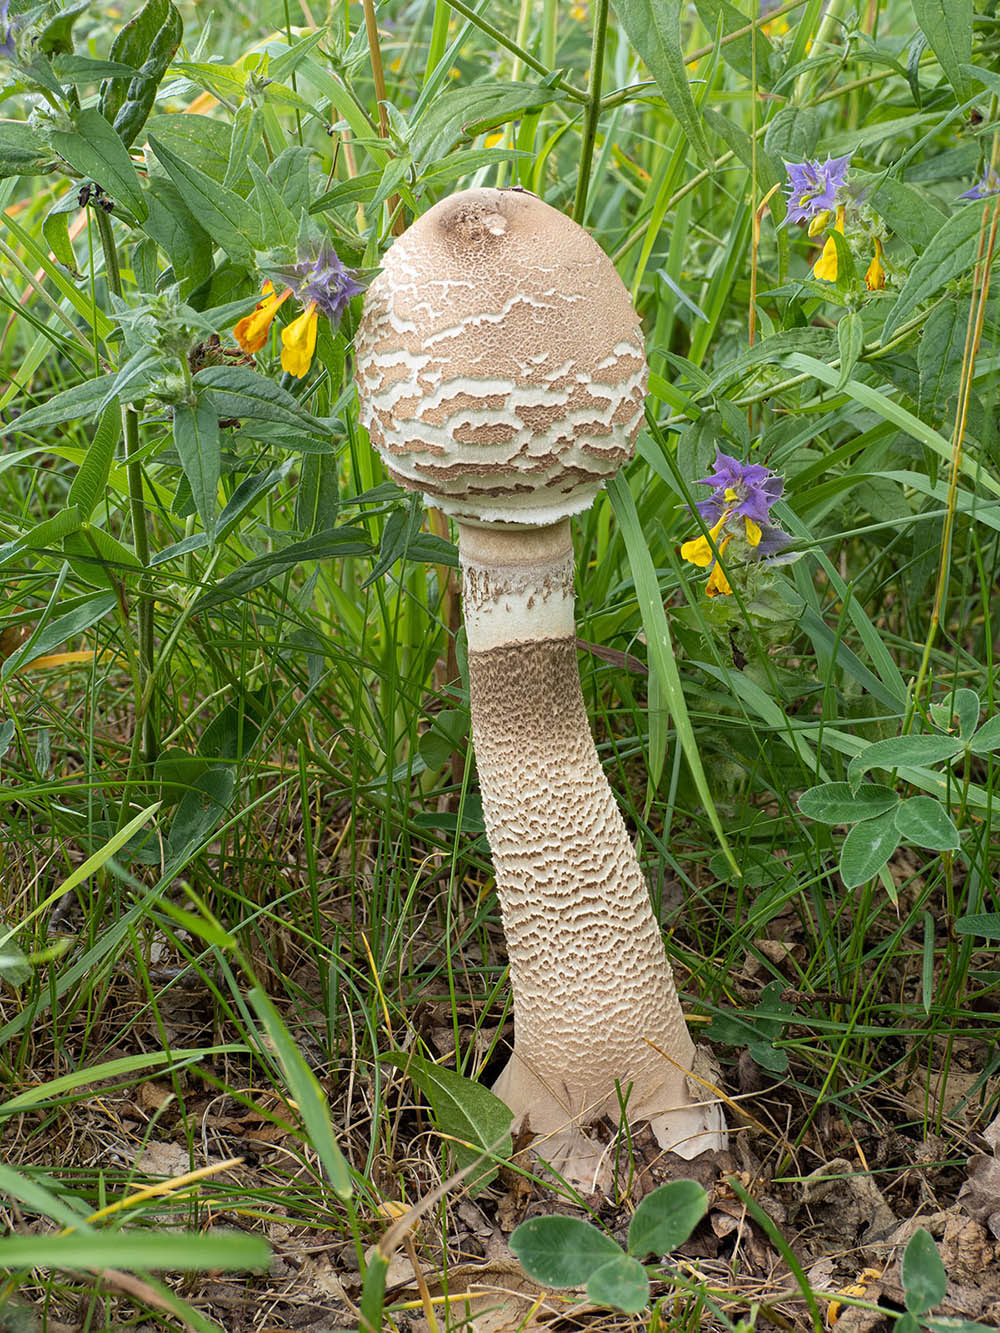 Гриб-зонтик высокий (Macrolepiota procera) в природном парке G?rv?ln, Стокгольм. Июль 2020 года. Автор фото: Сутормина Марина